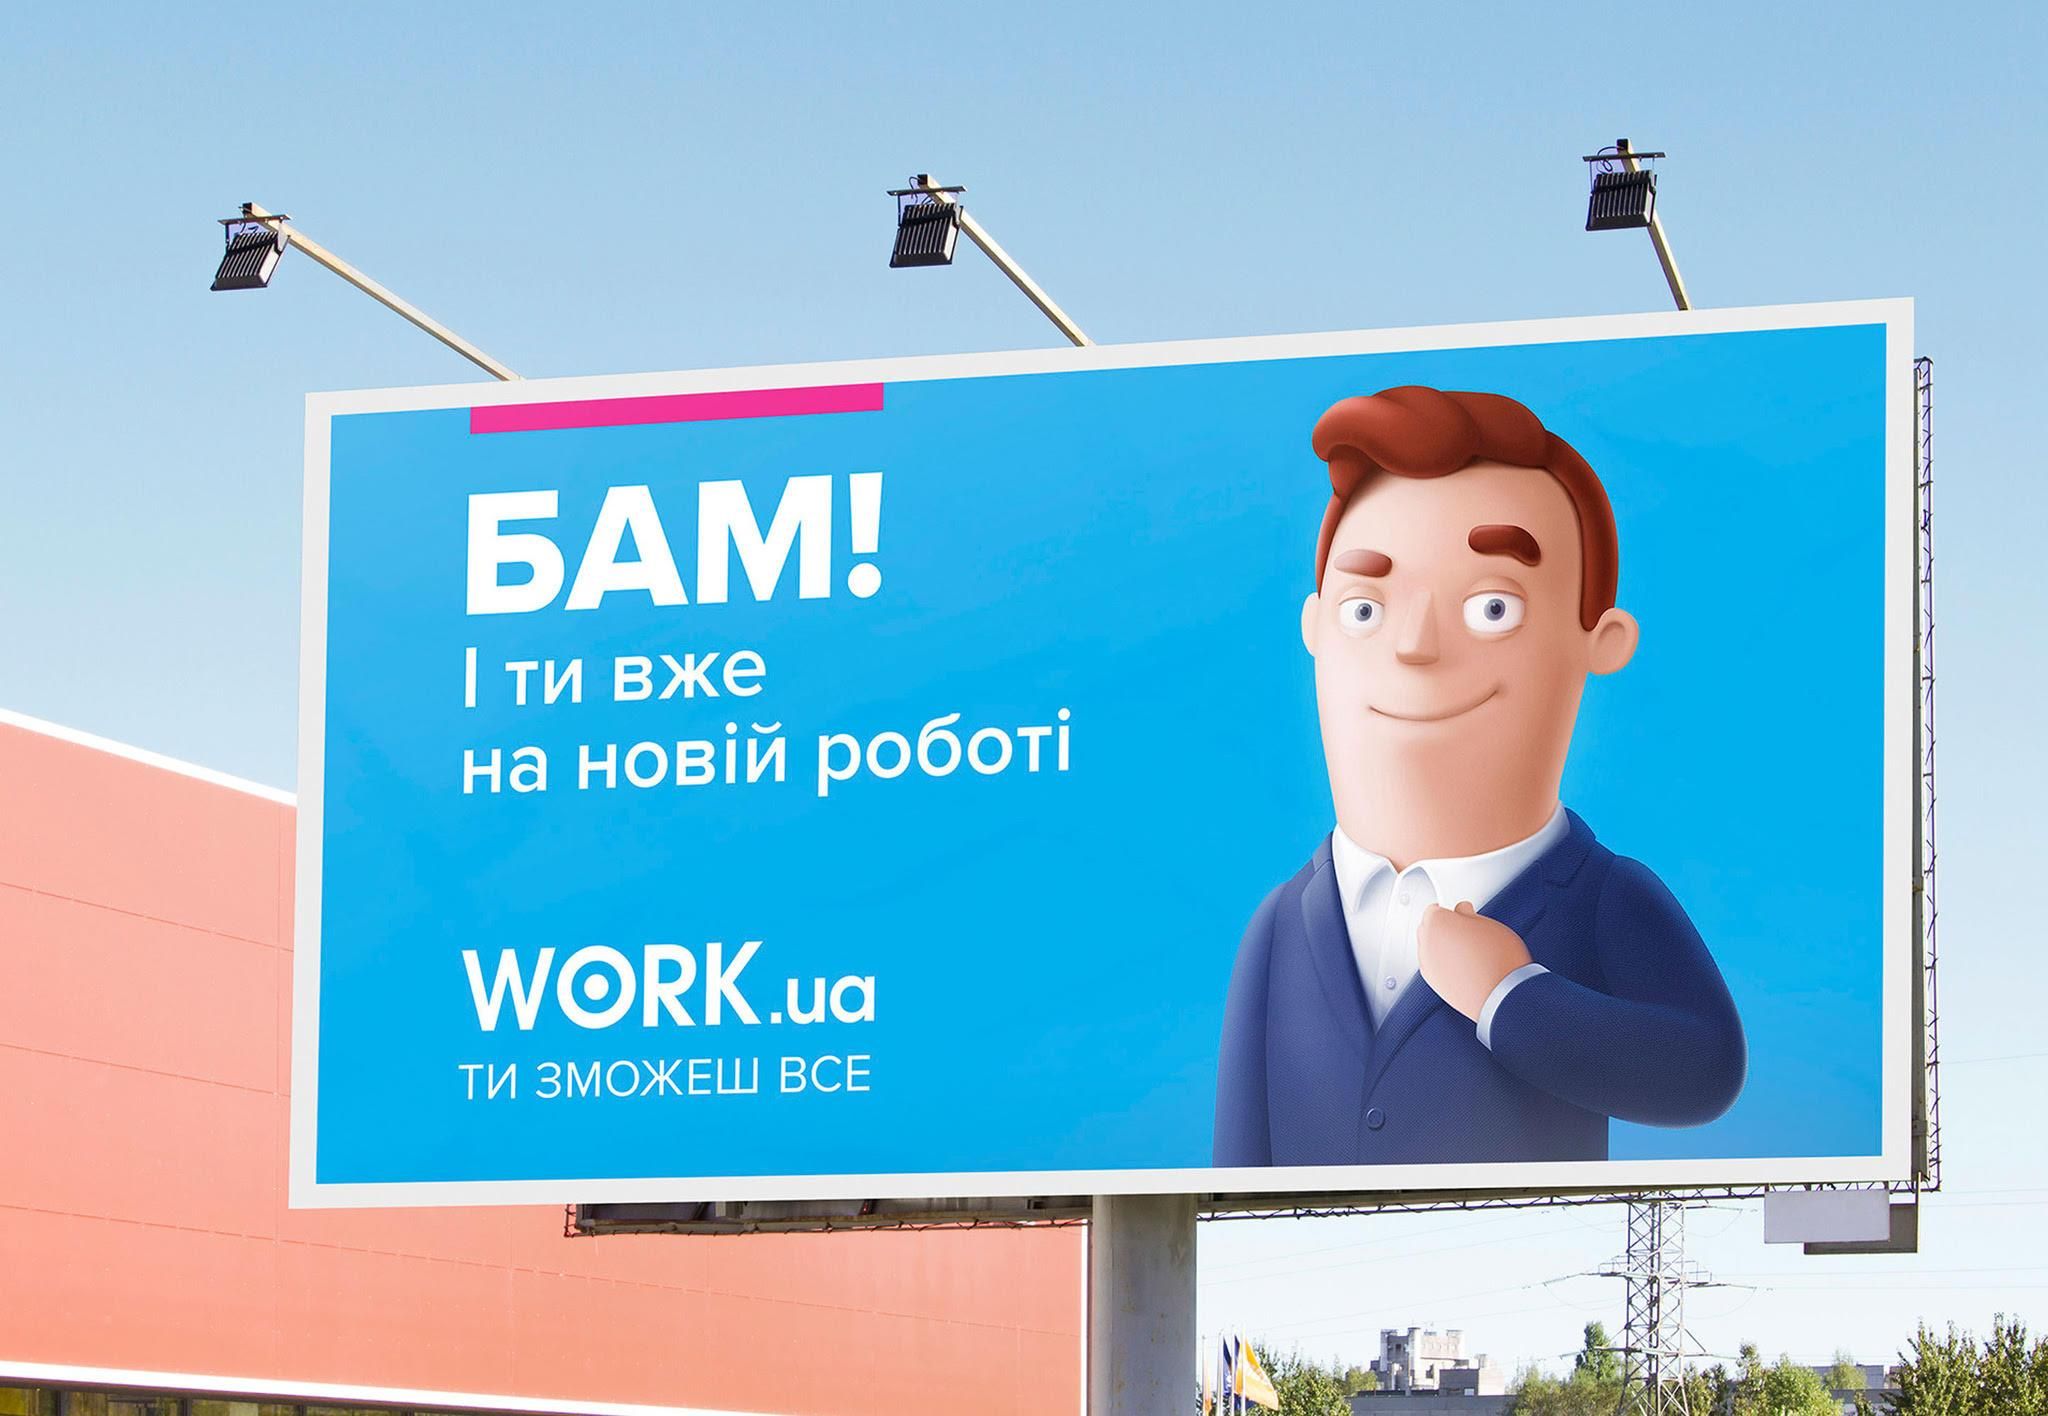 Work.ua получил англоязычную версию: как это пригодится пользователям